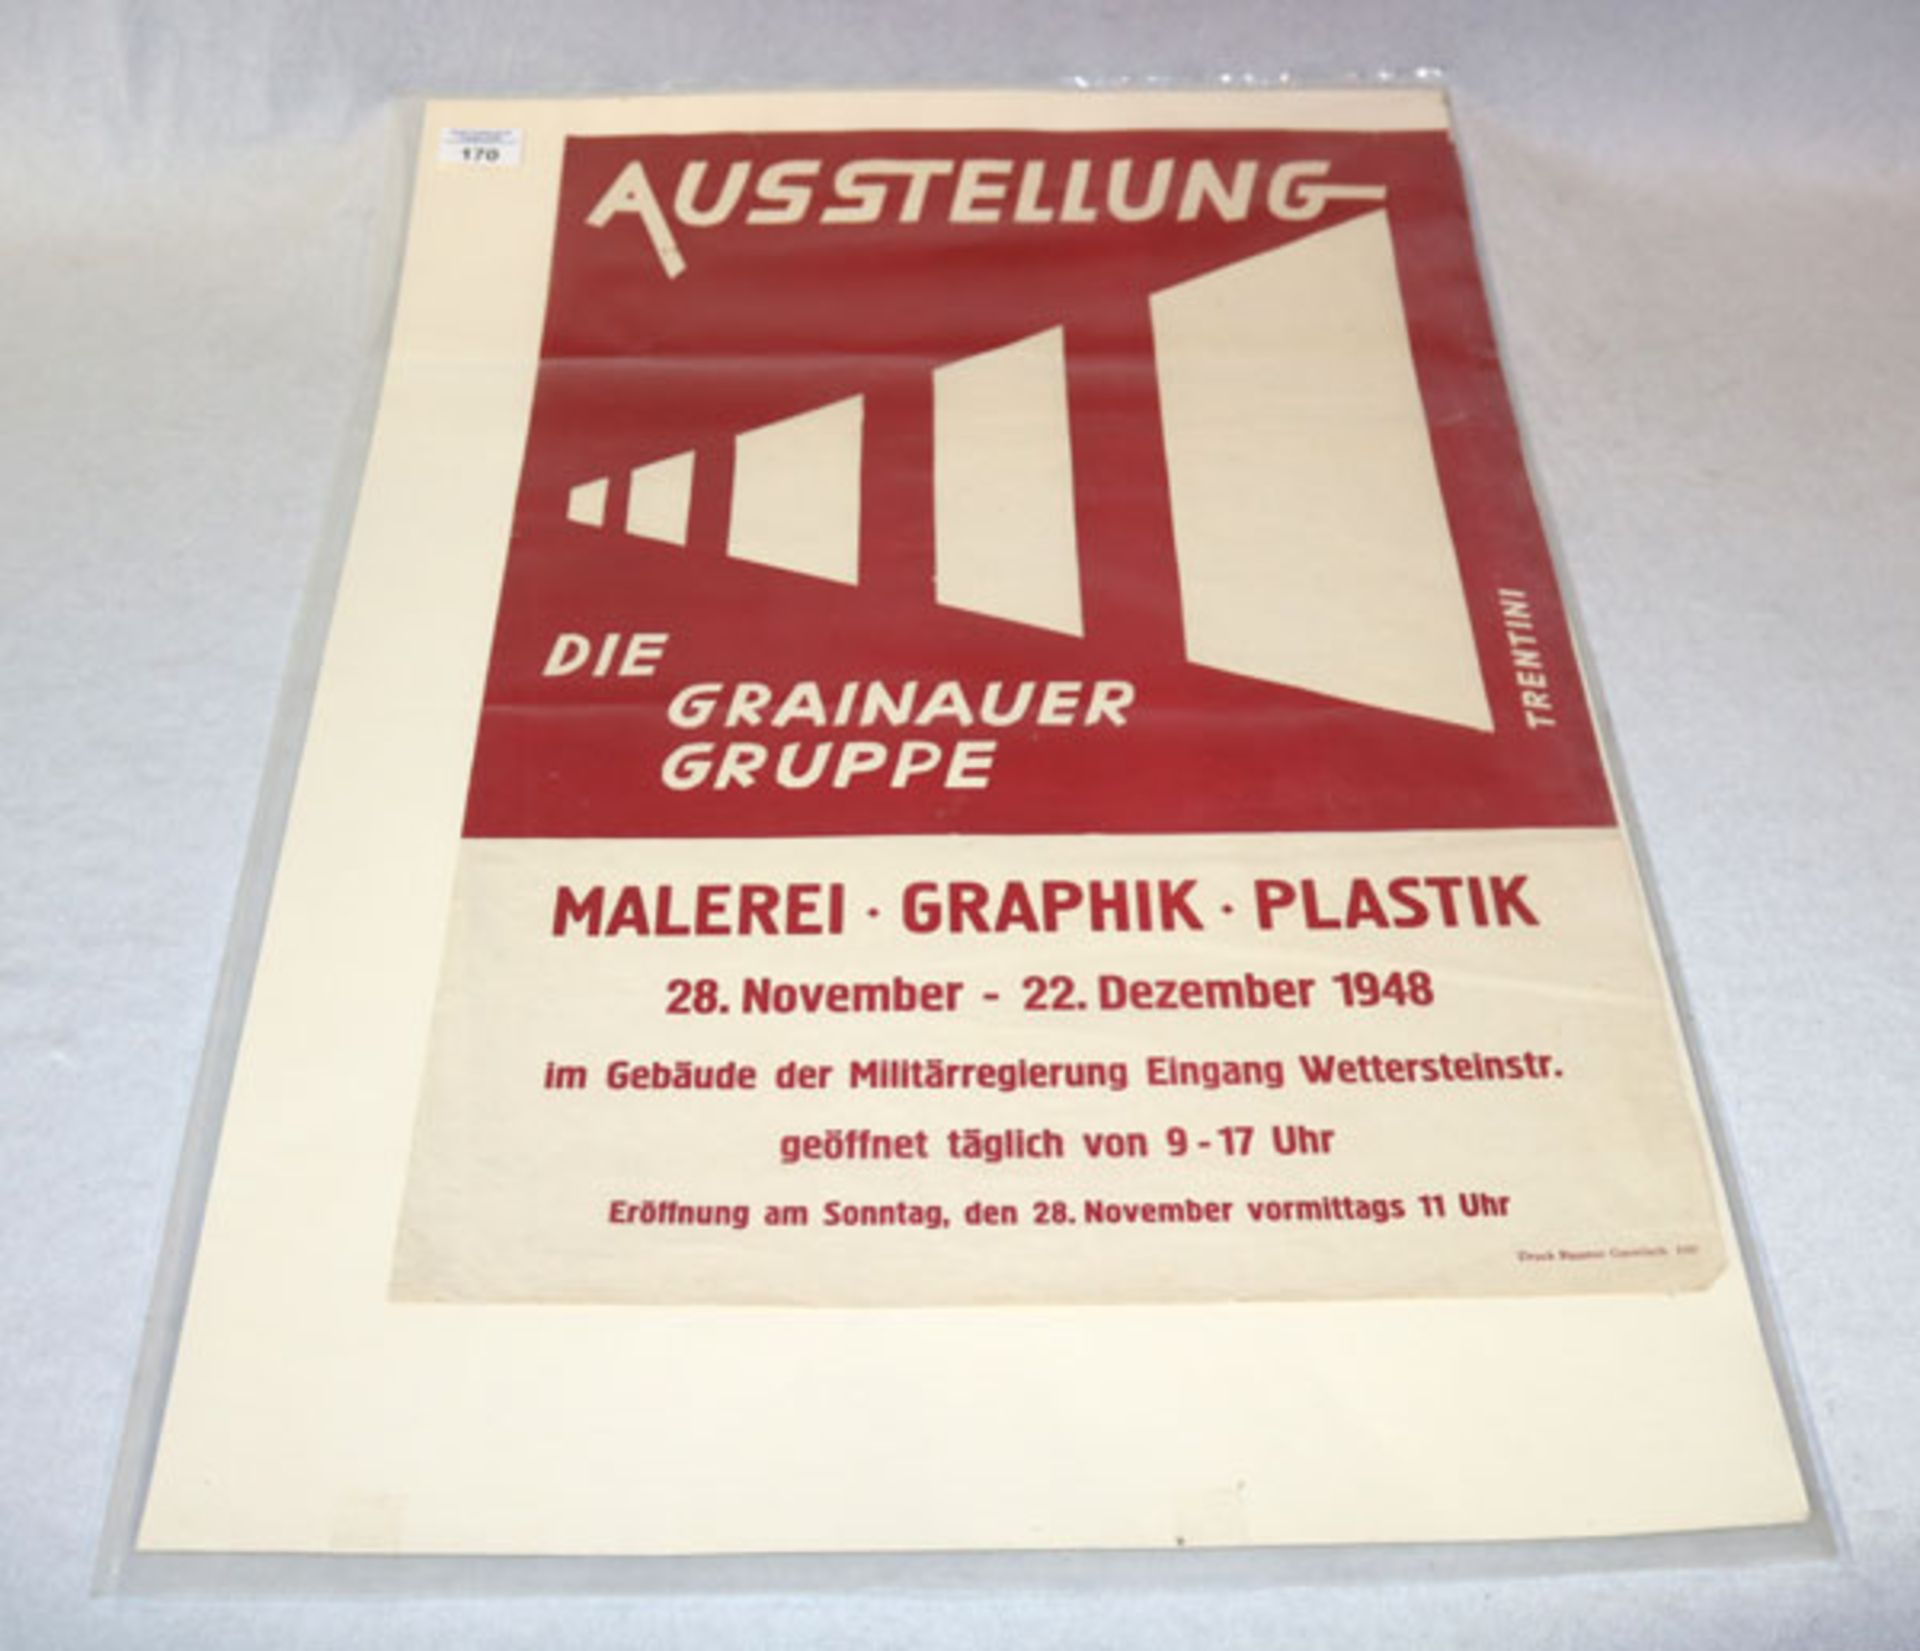 Plakat 'Die Grainauer Gruppe', Kunstausstellung 1948 in Garmisch-Partenkirchen, 59 cm x 41 cm